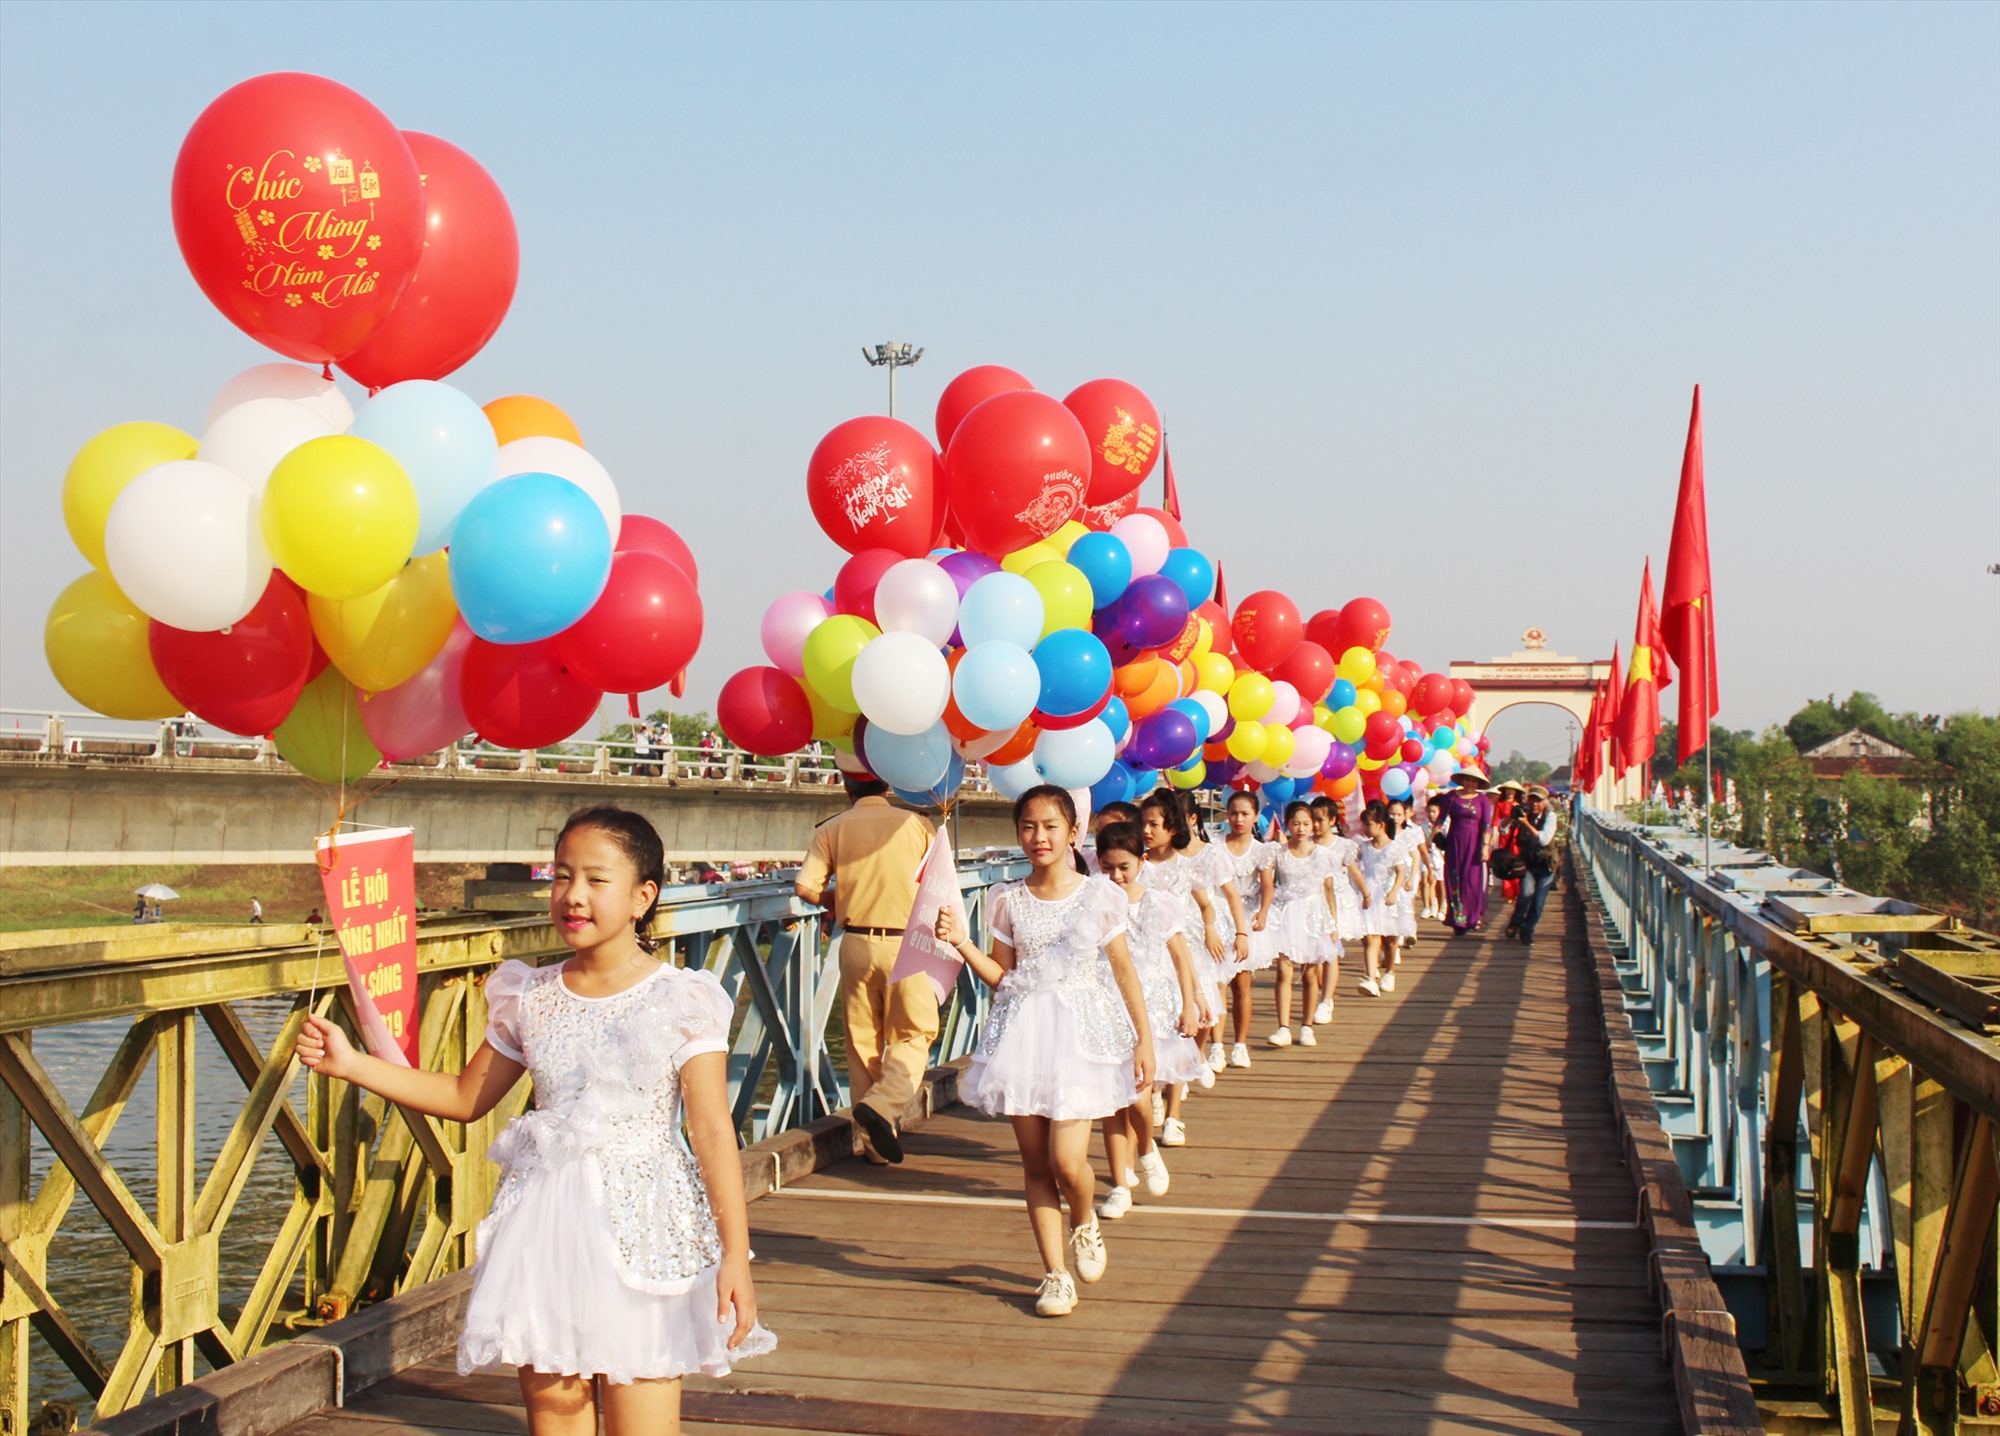 Di tích quốc gia đặc biệt Đôi bờ Hiền Lương- Bến Hải là một trong những không gian chính để tổ chức Festival vì Hòa bình - Ảnh T.L